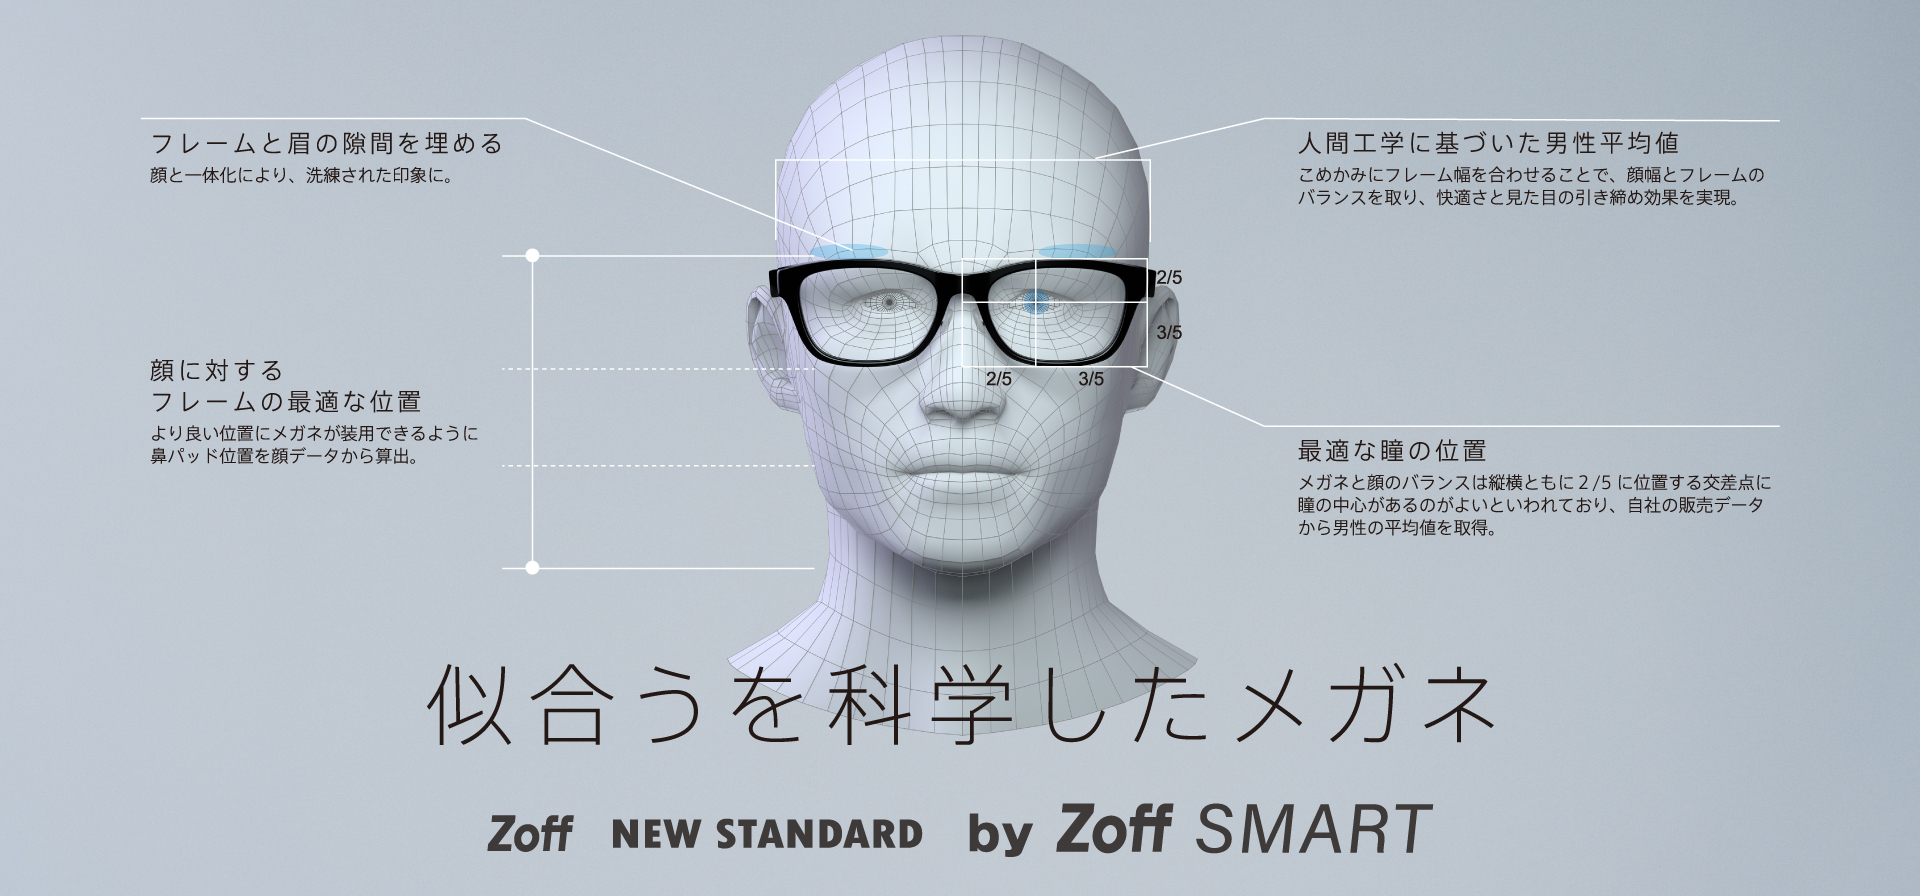 男性の顔に似合うベストバランスで設計されたZoff NEW STANDARDから、軽量モデル「Zoff SMART」が登場。